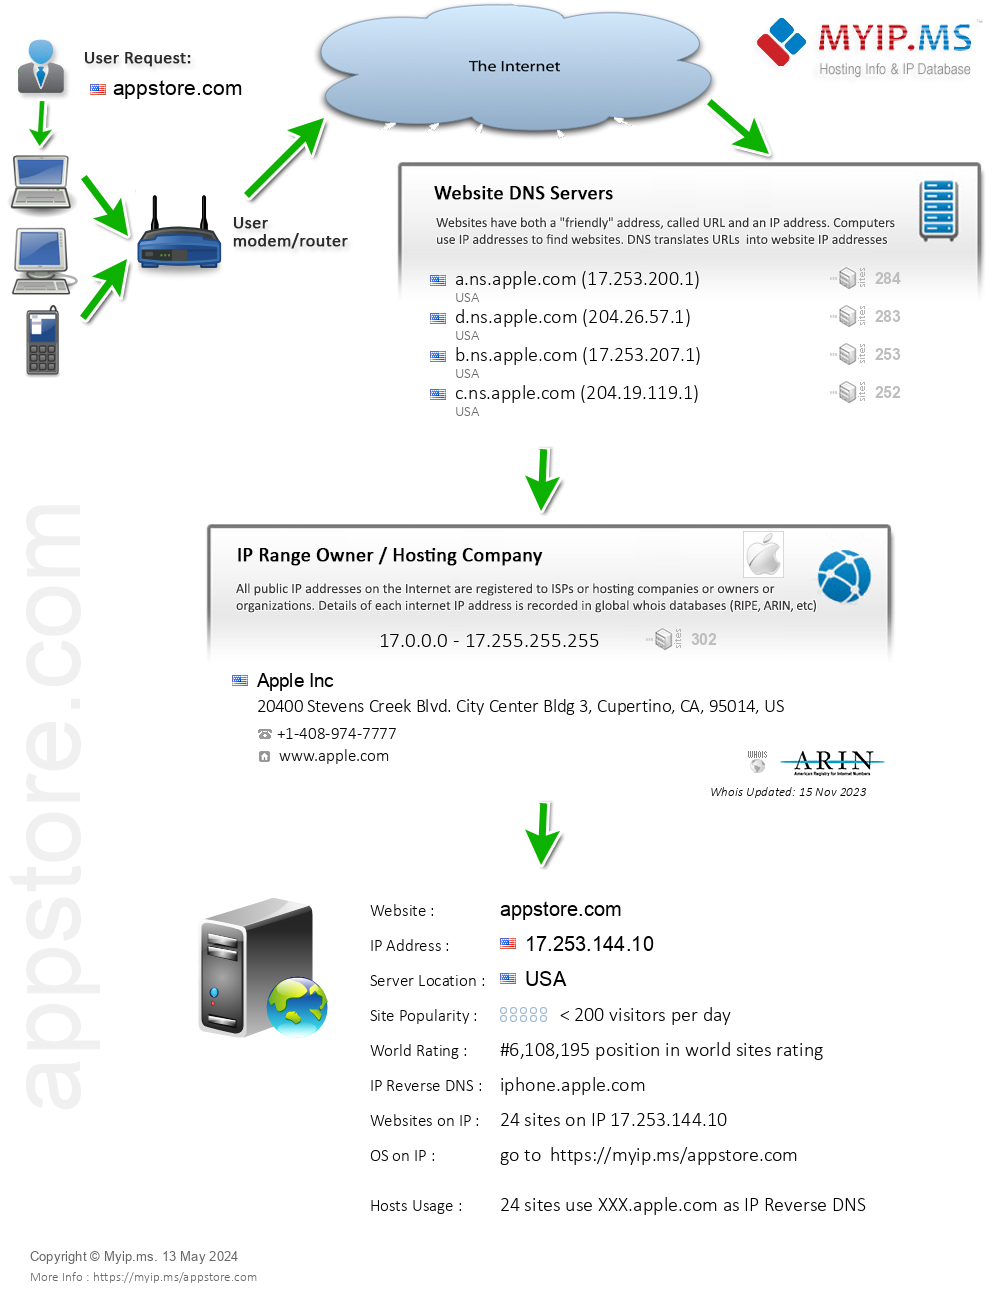 Appstore.com - Website Hosting Visual IP Diagram